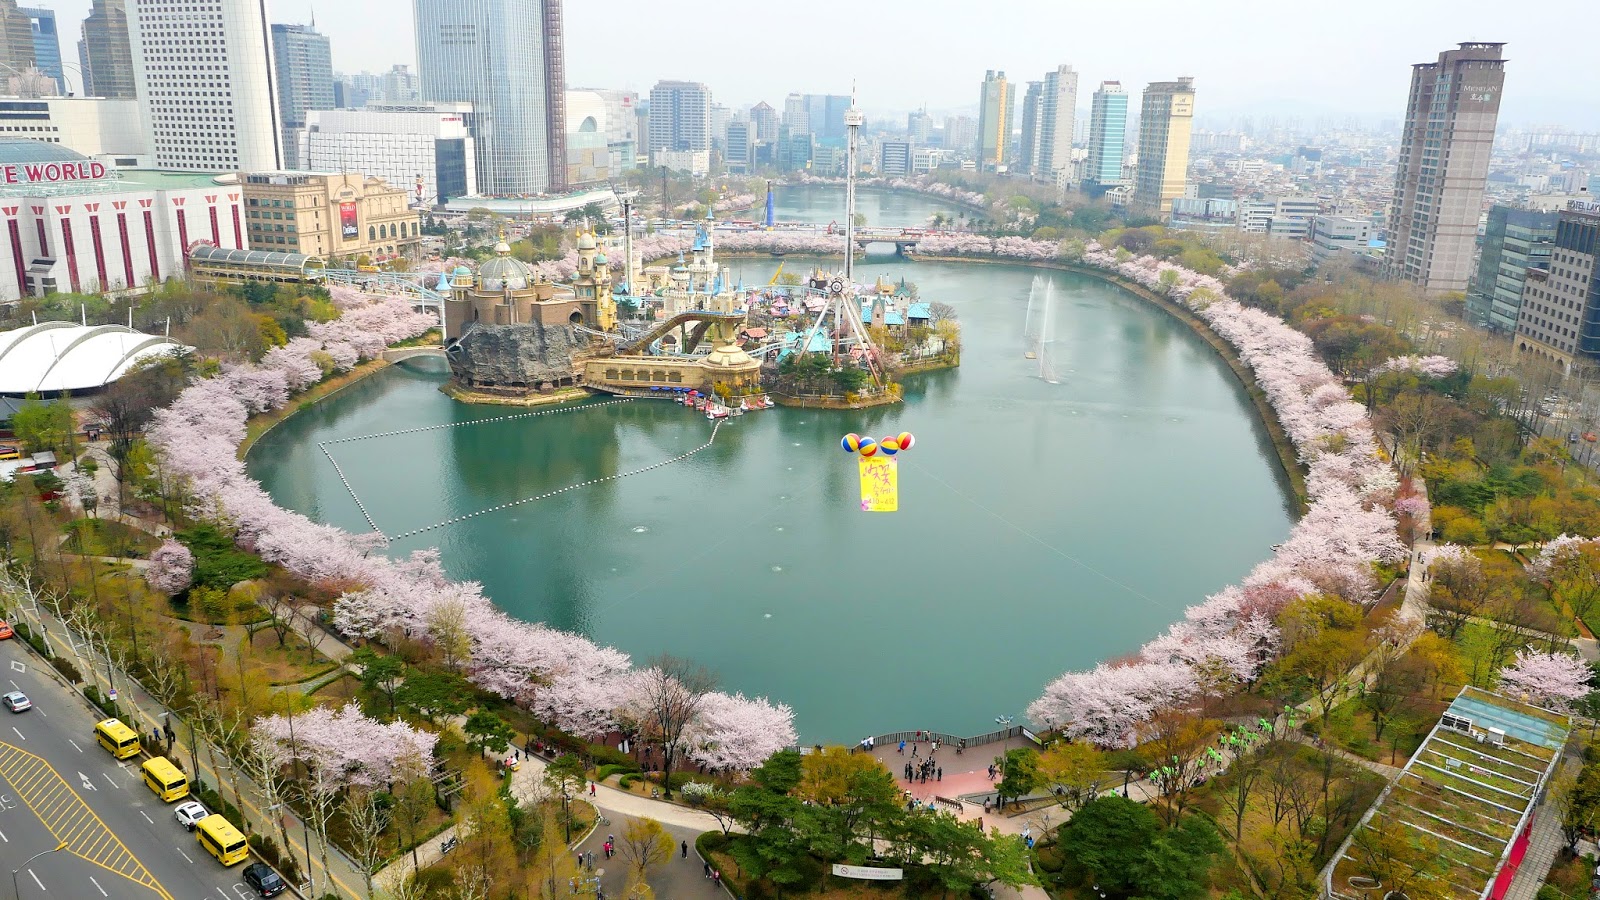 Hồ Seokchon rực rỡ sắc trắng hồng của hoa anh đào. Ảnh: Internet